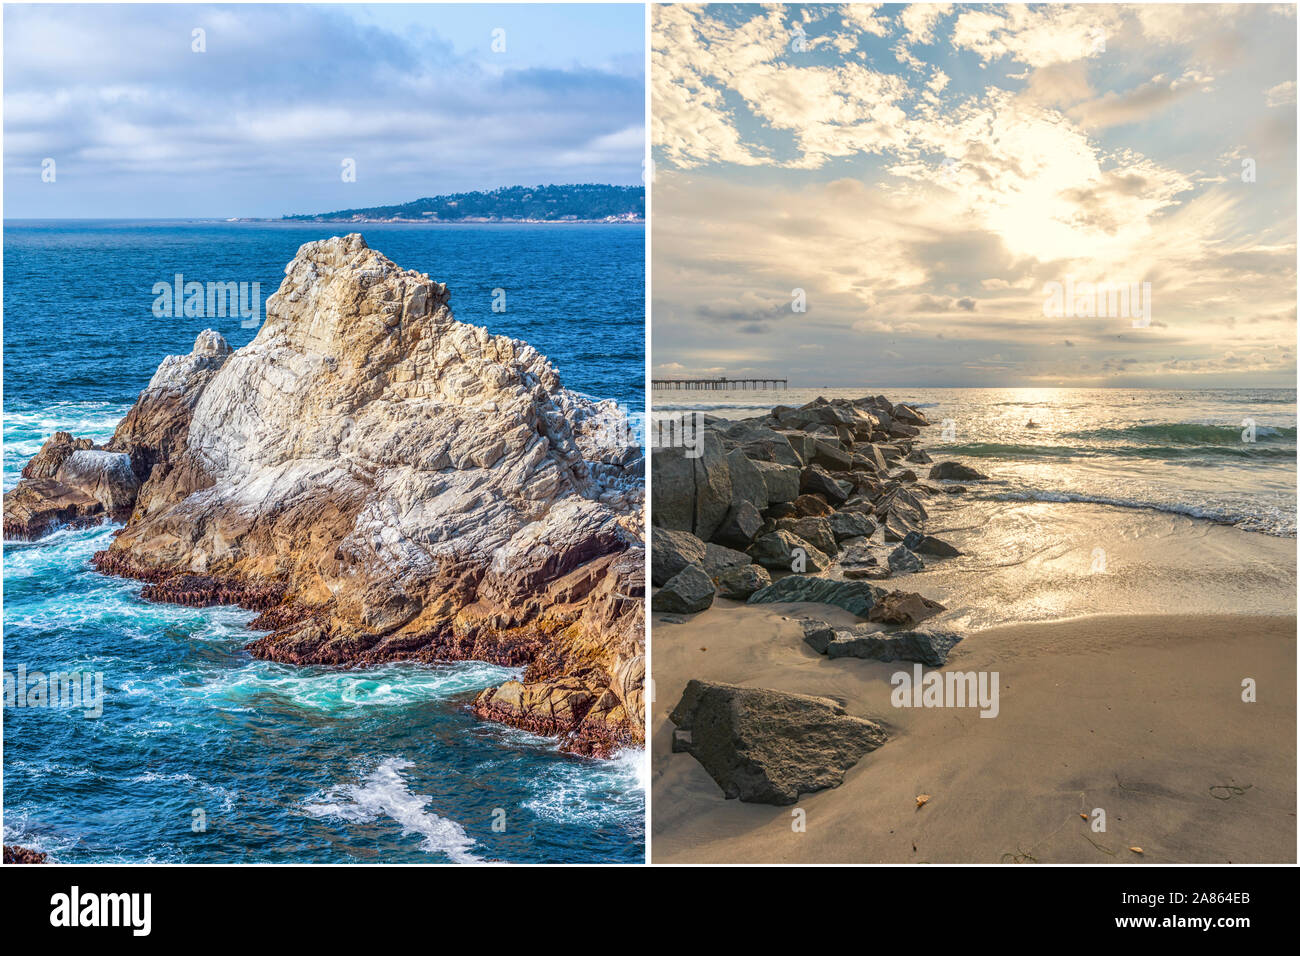 Küsten- und Natur Konzept in diptychon Format dargestellt. Auf der linken Seite ist der Point Lobos State Natural Reserve. Auf der rechten Seite ist die Ocean Beach in San Diego. Stockfoto